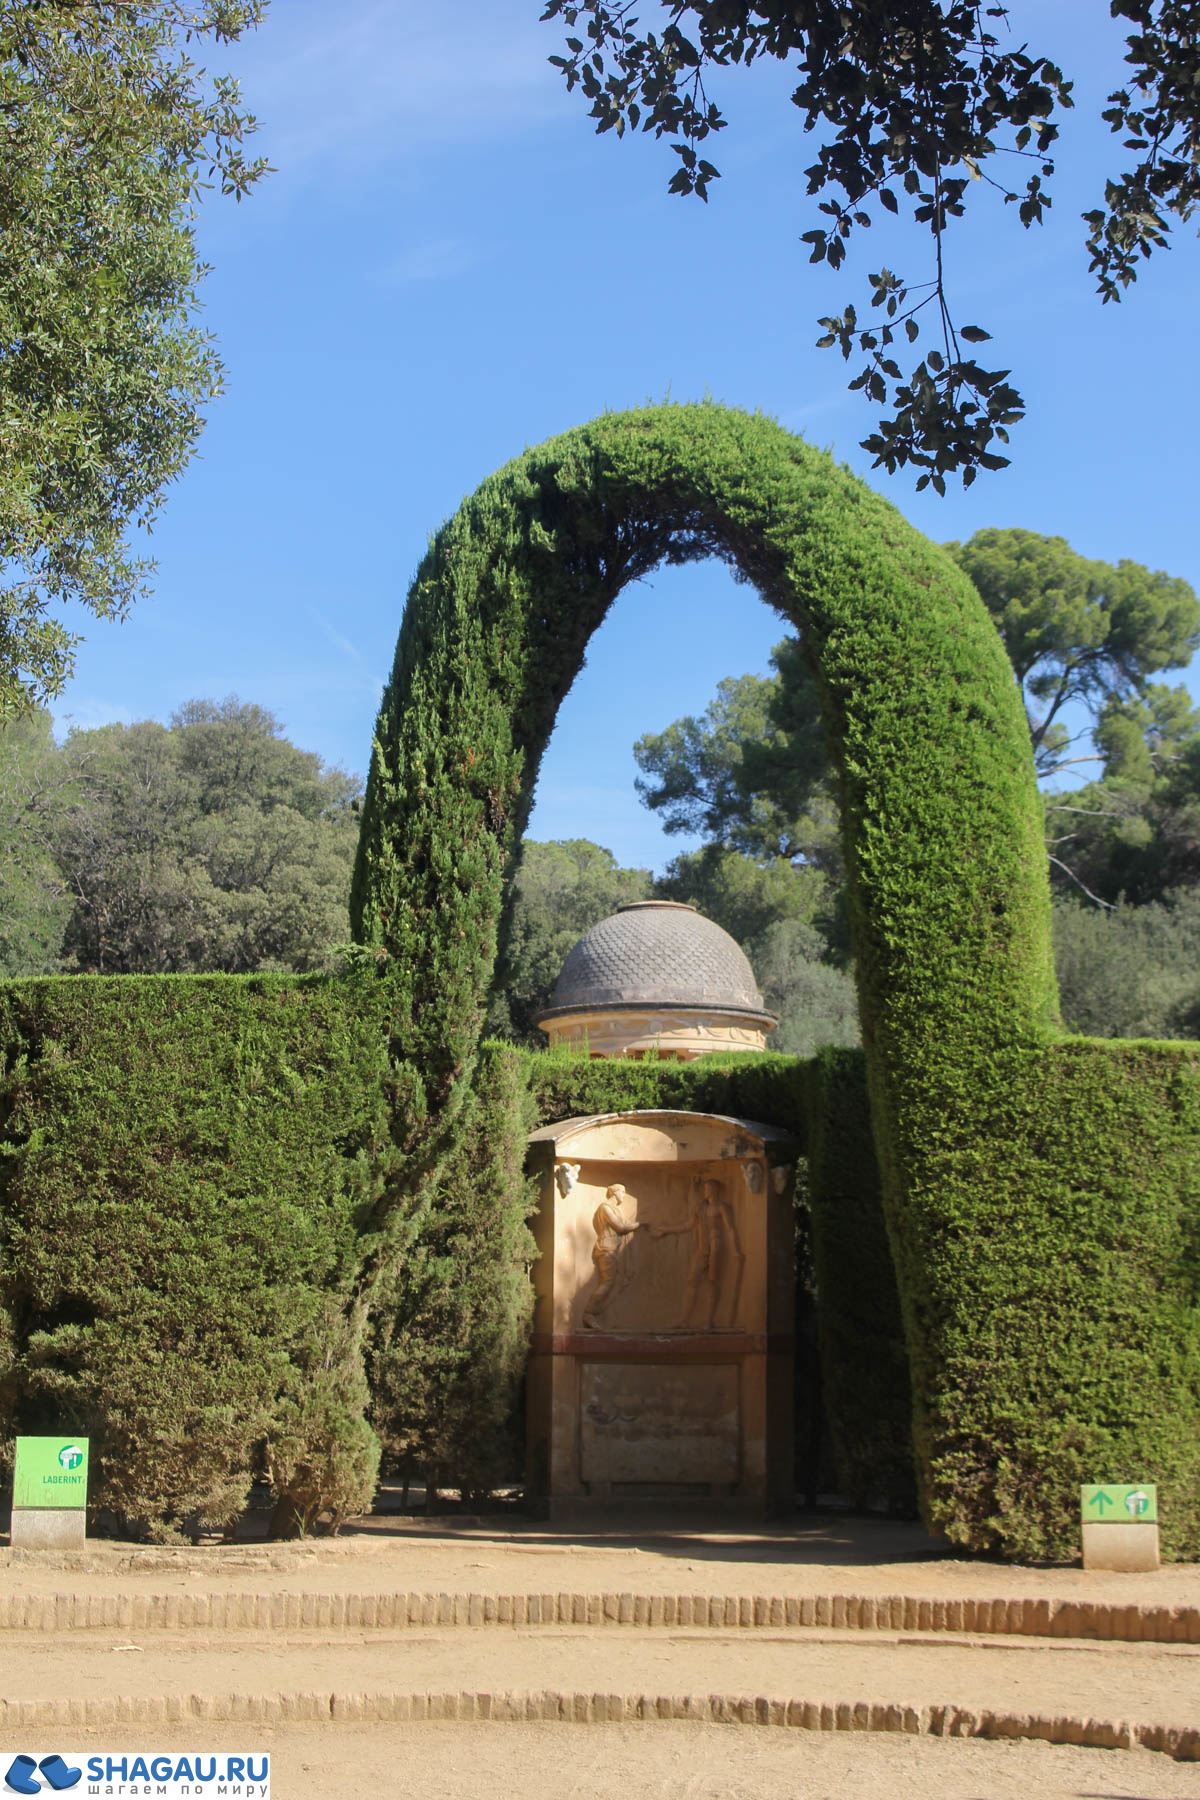  Парк Лабирнт в Барселоне (Laberinto de Horta): спокойное и уютное место для прогулок фотография 6